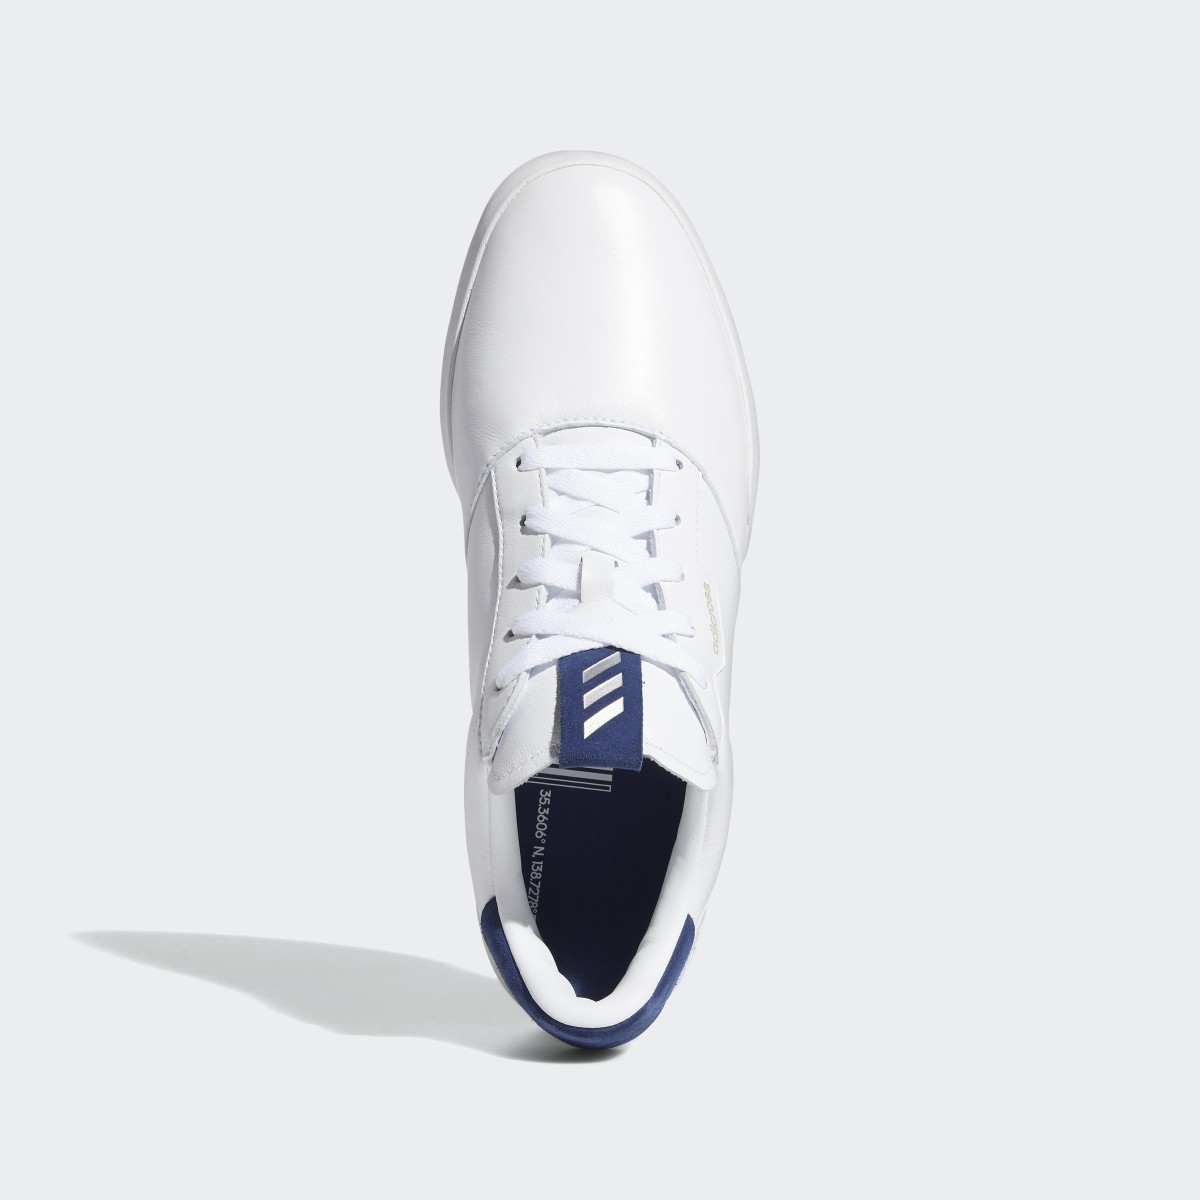 Adidas Scarpe da golf adicross Retro. 6